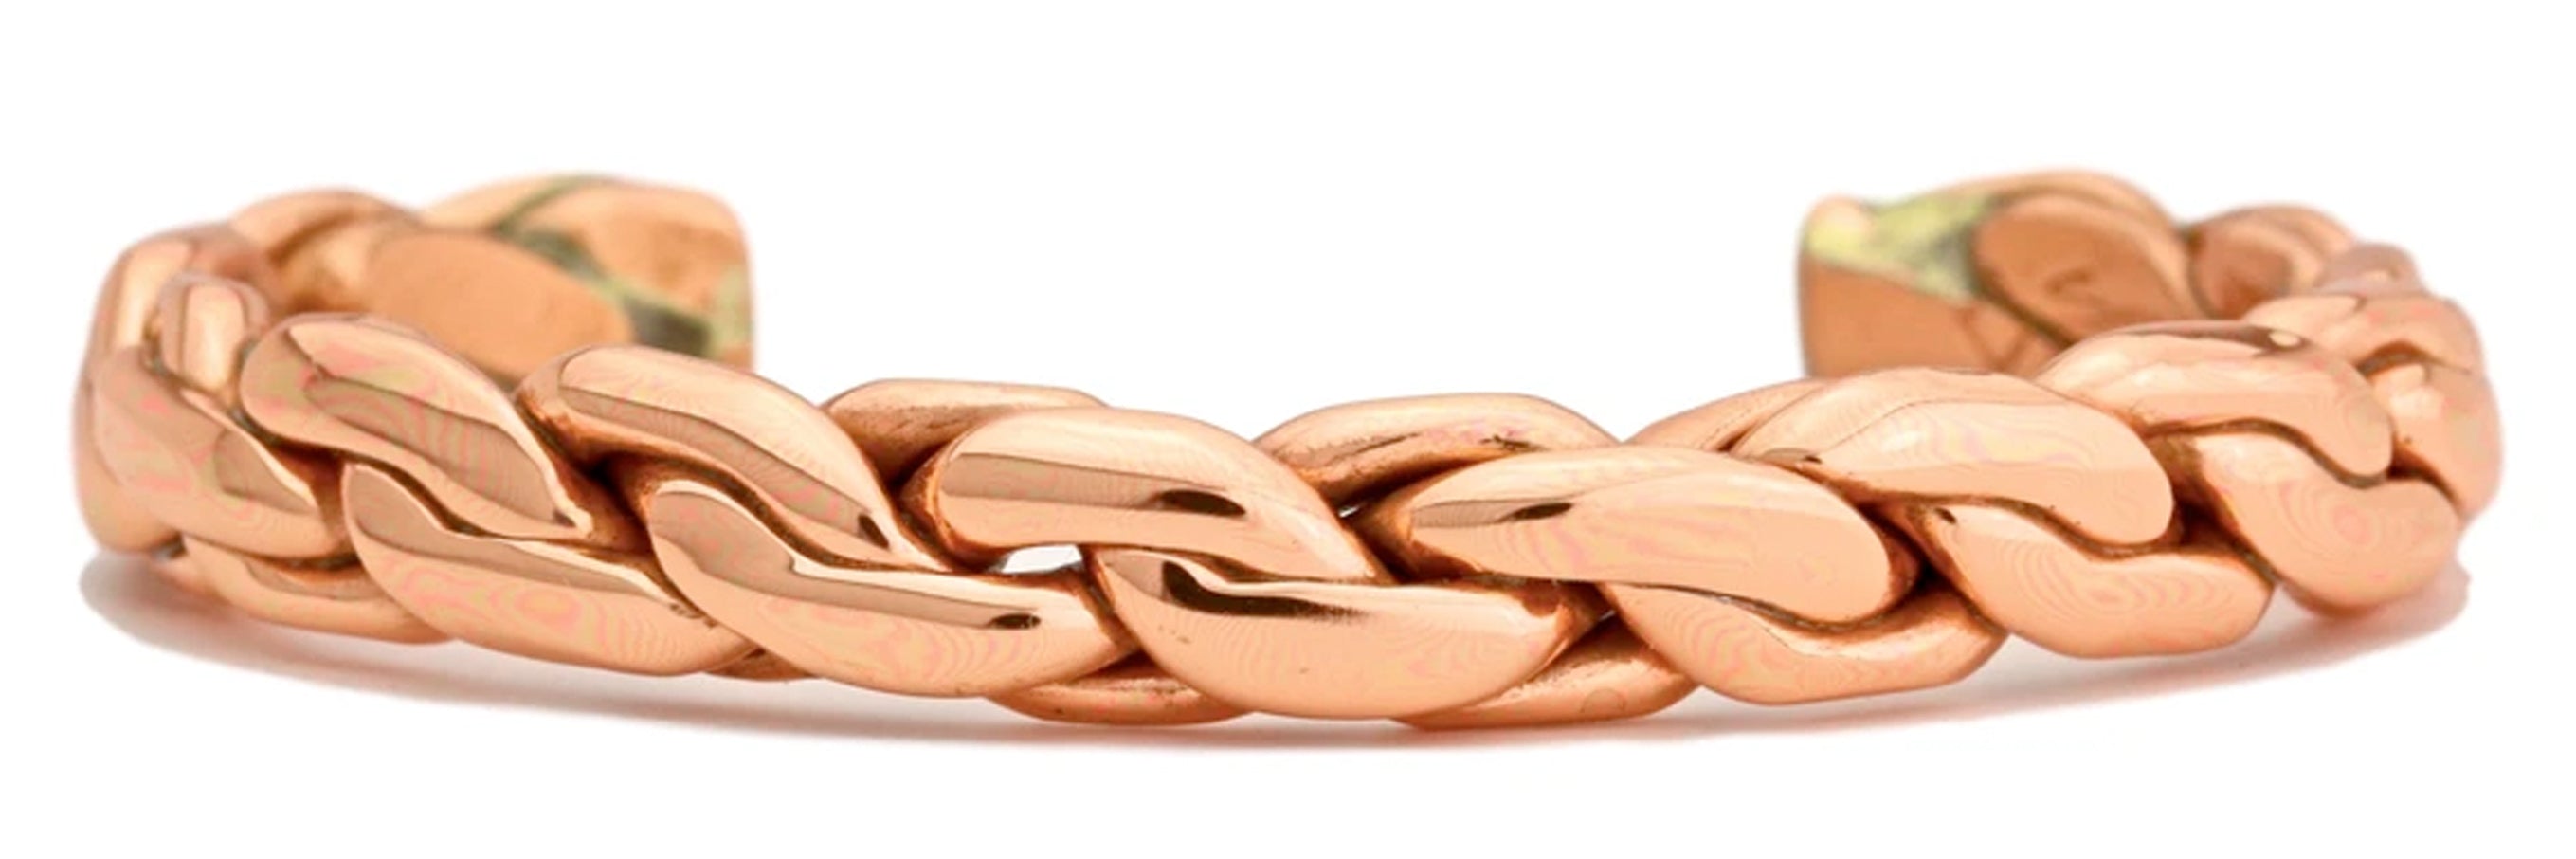 Copper Chain - (694) – Sergio Lub